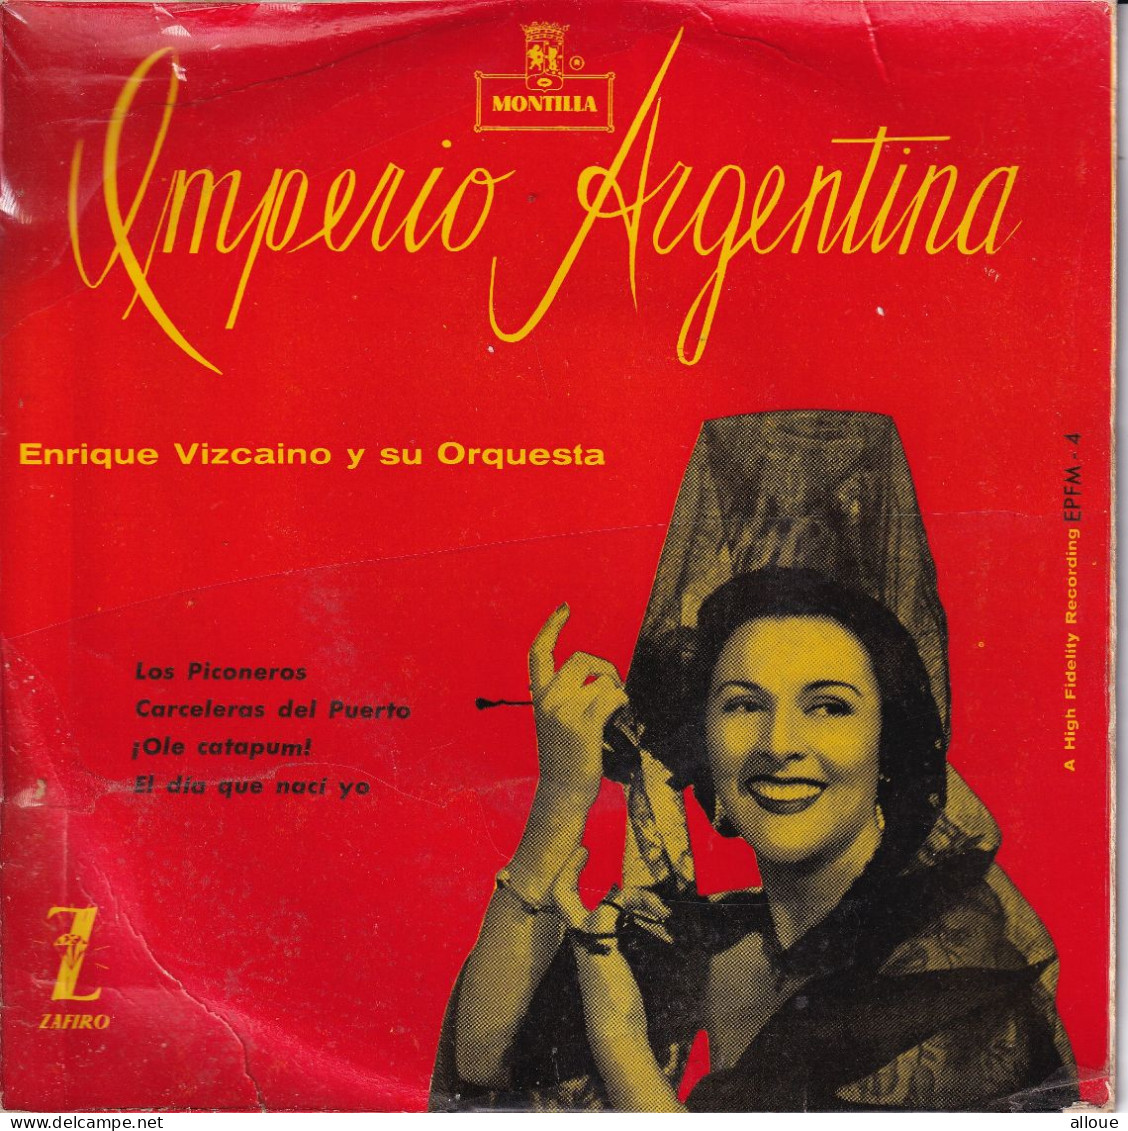 ENRIQUE VIZCAINO Y SU ORQUESTA - SPAIN EP - IMPERIO ARGENTINA - Musiche Del Mondo